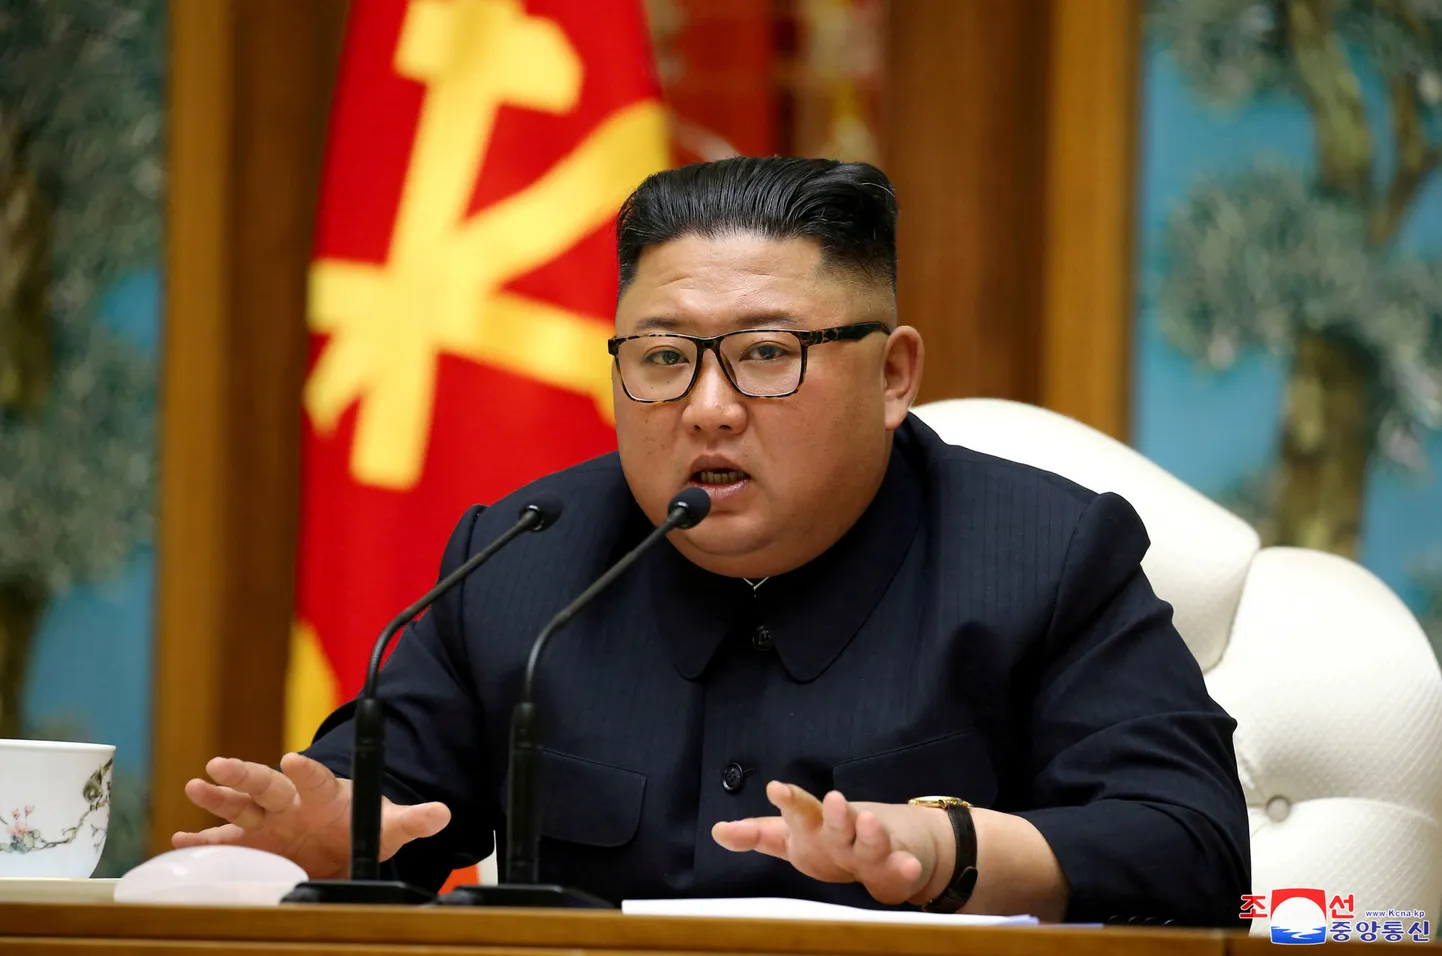 Ziemeļkorejas līderis Kims Čenuns.